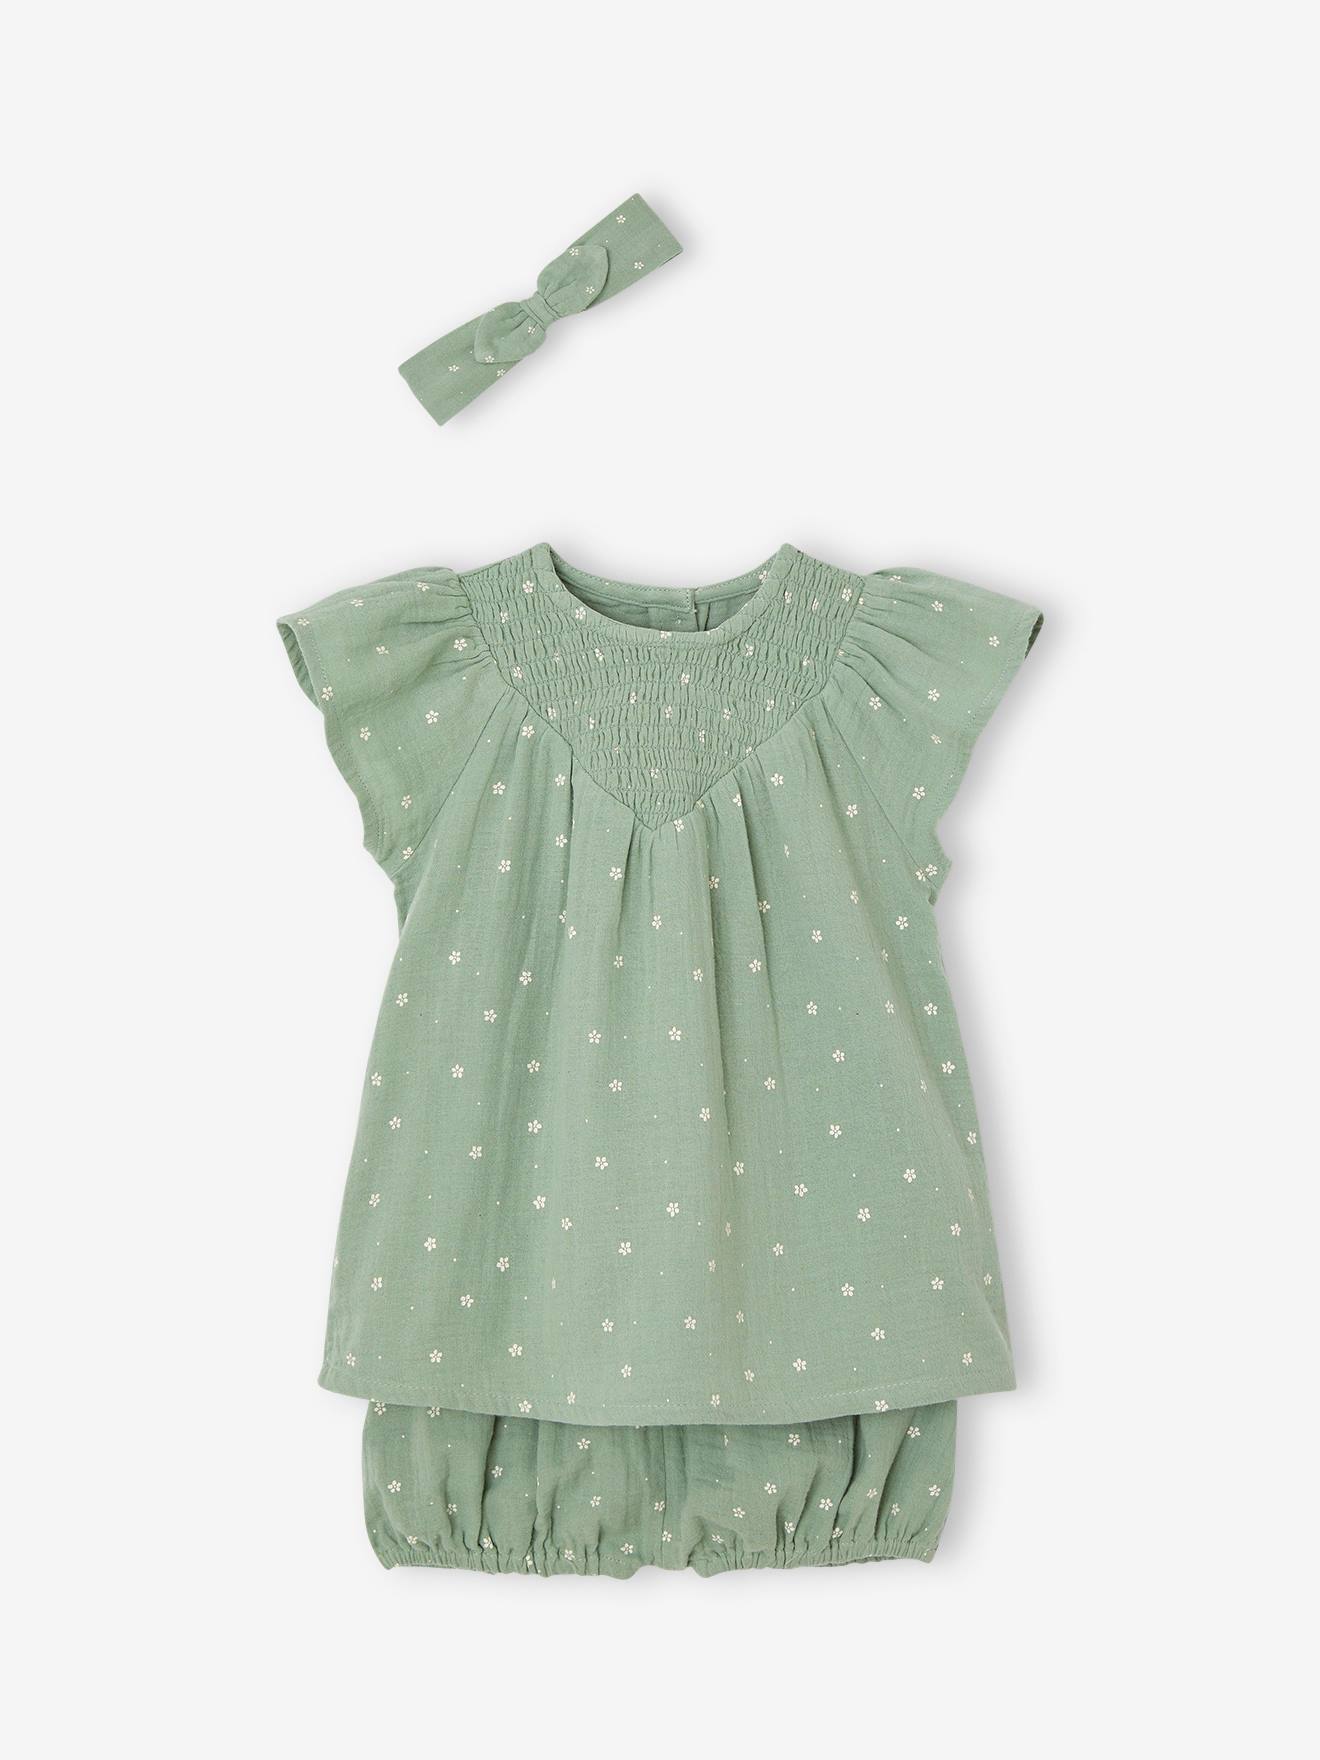 ensemble en gaze de coton : robe + bloomer + bandeau bébé vert sauge